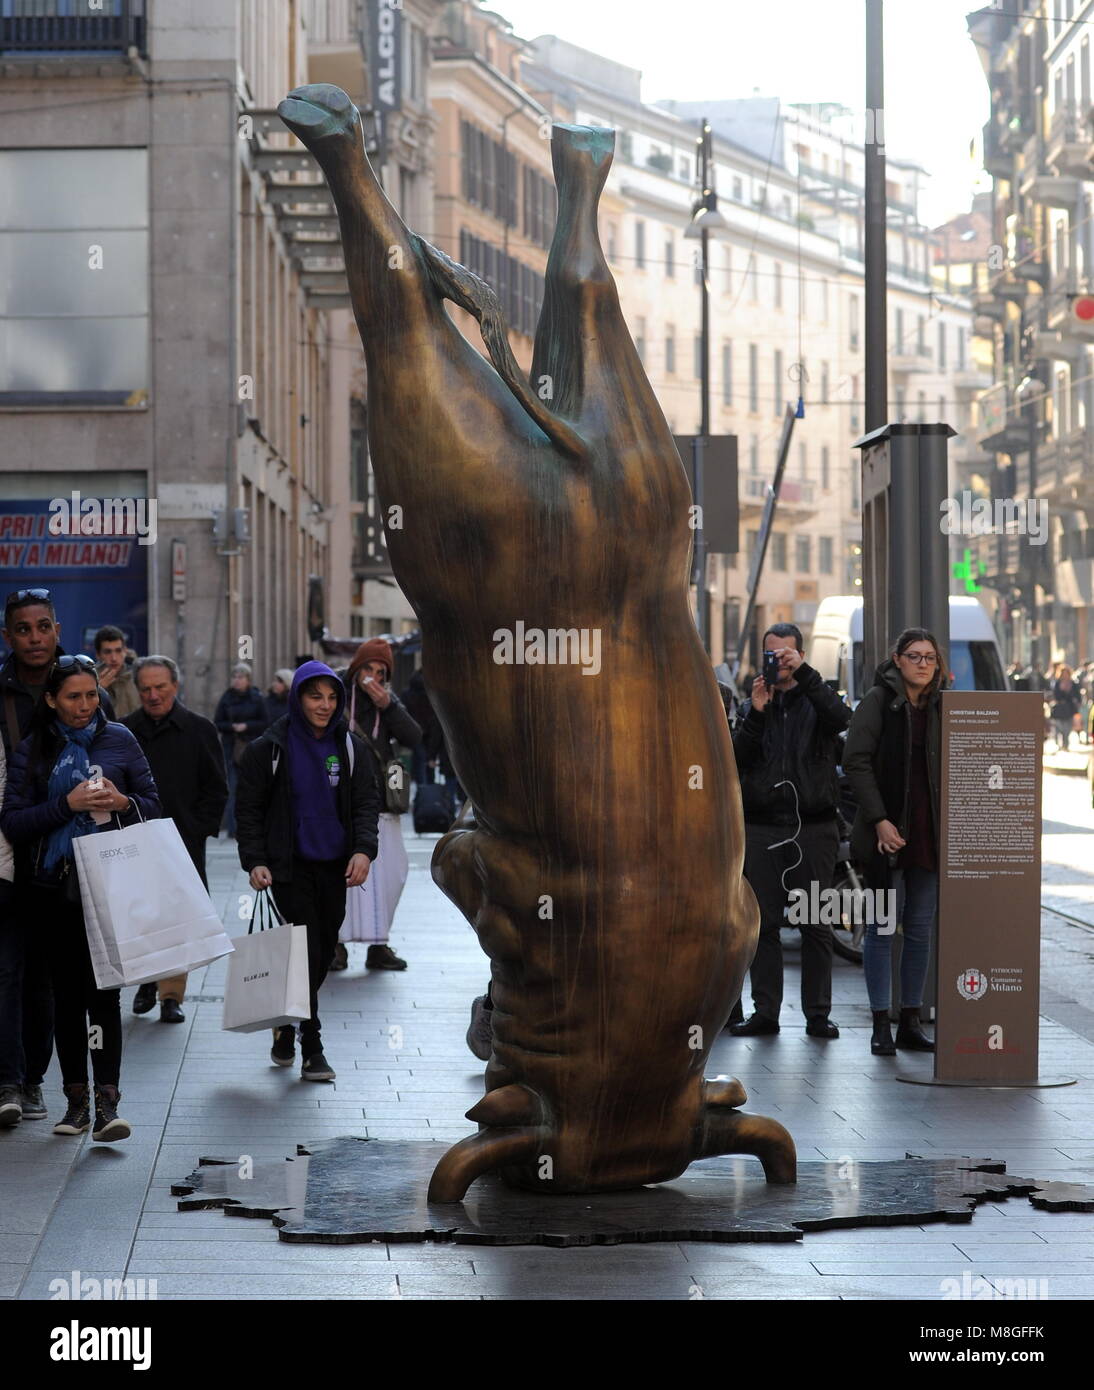 estatua de toro al revés firmada por Christian Balzano ha sido exhibido en via Torino. La escultura presentada por Banca Generali bajo el patrocinio de la ciudad de Milán